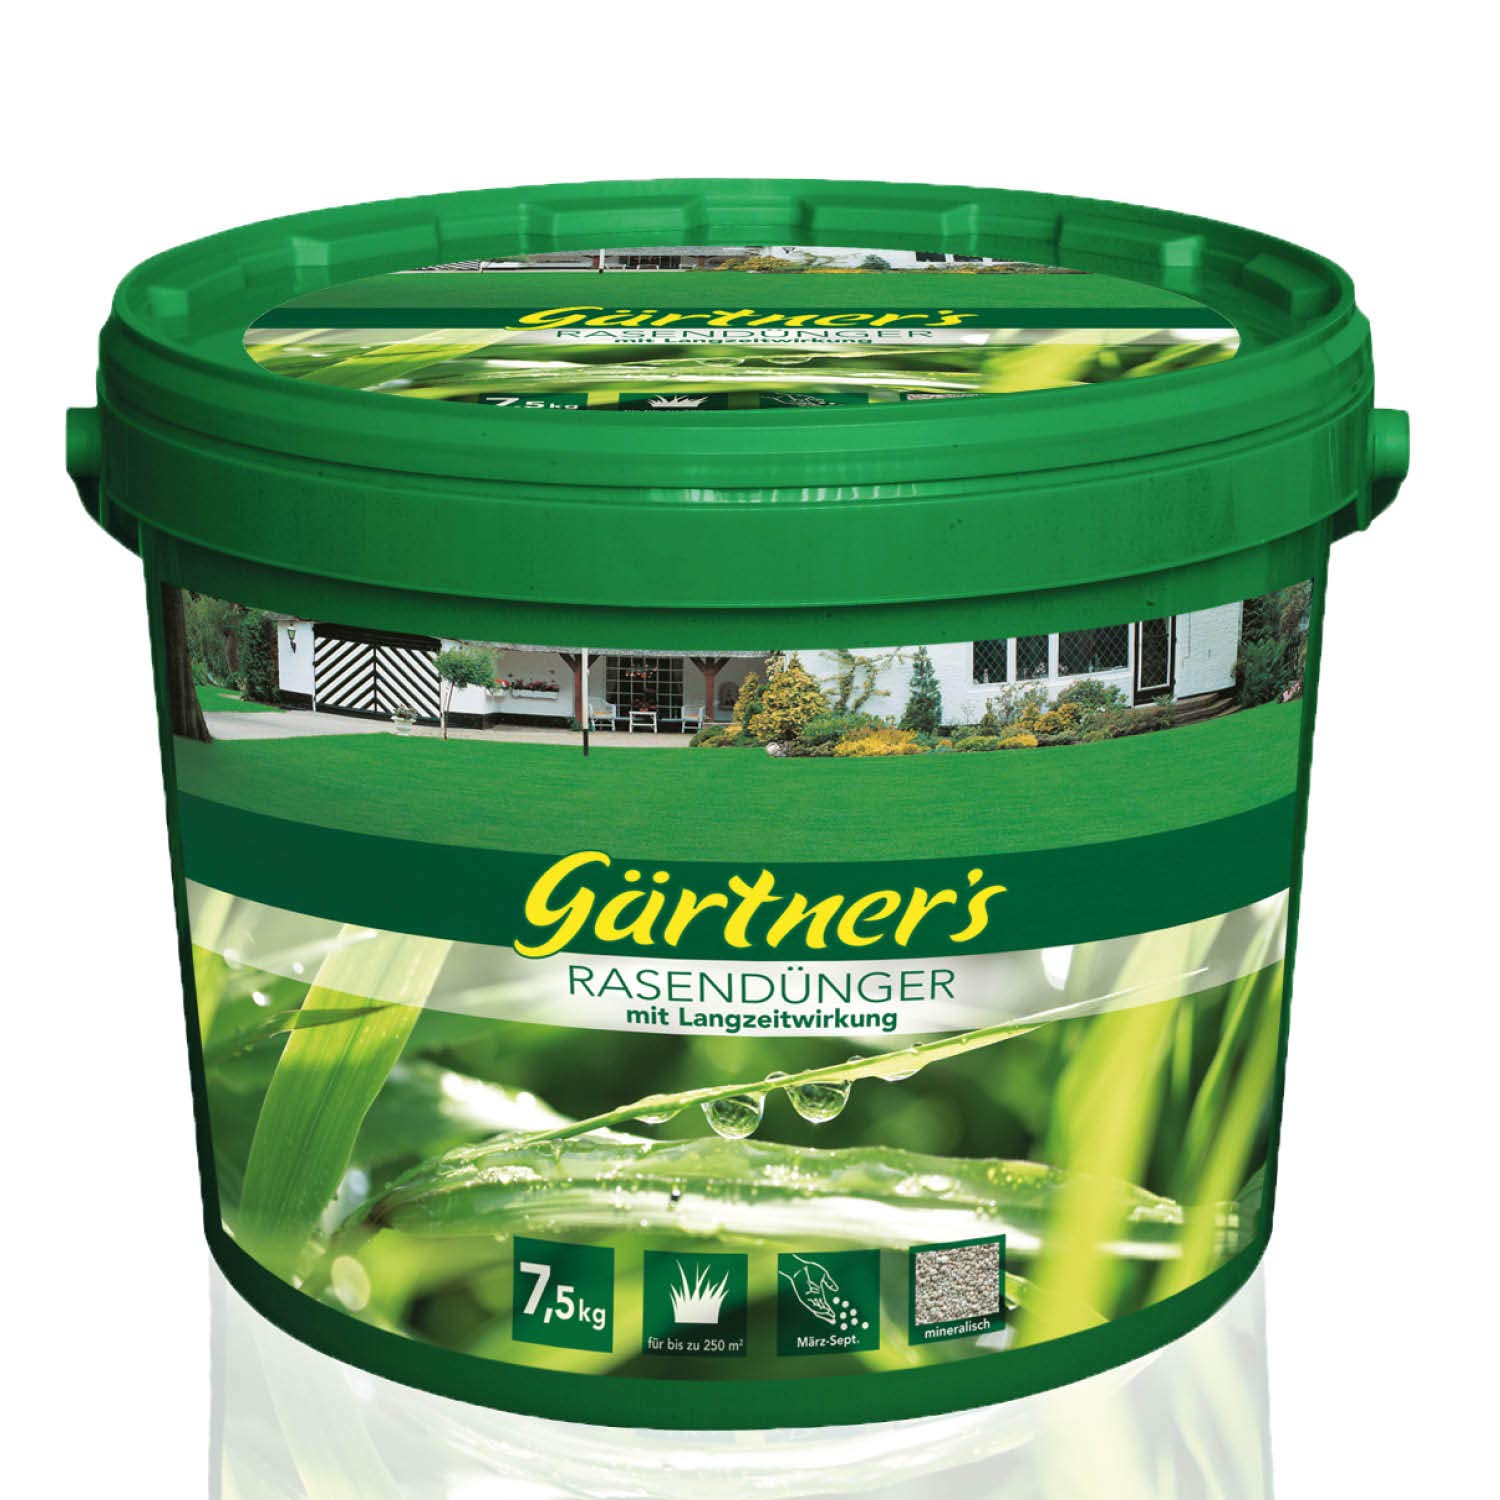 Gärtner’s Rasendünger mit Langzeitwirkung 7,5 kg